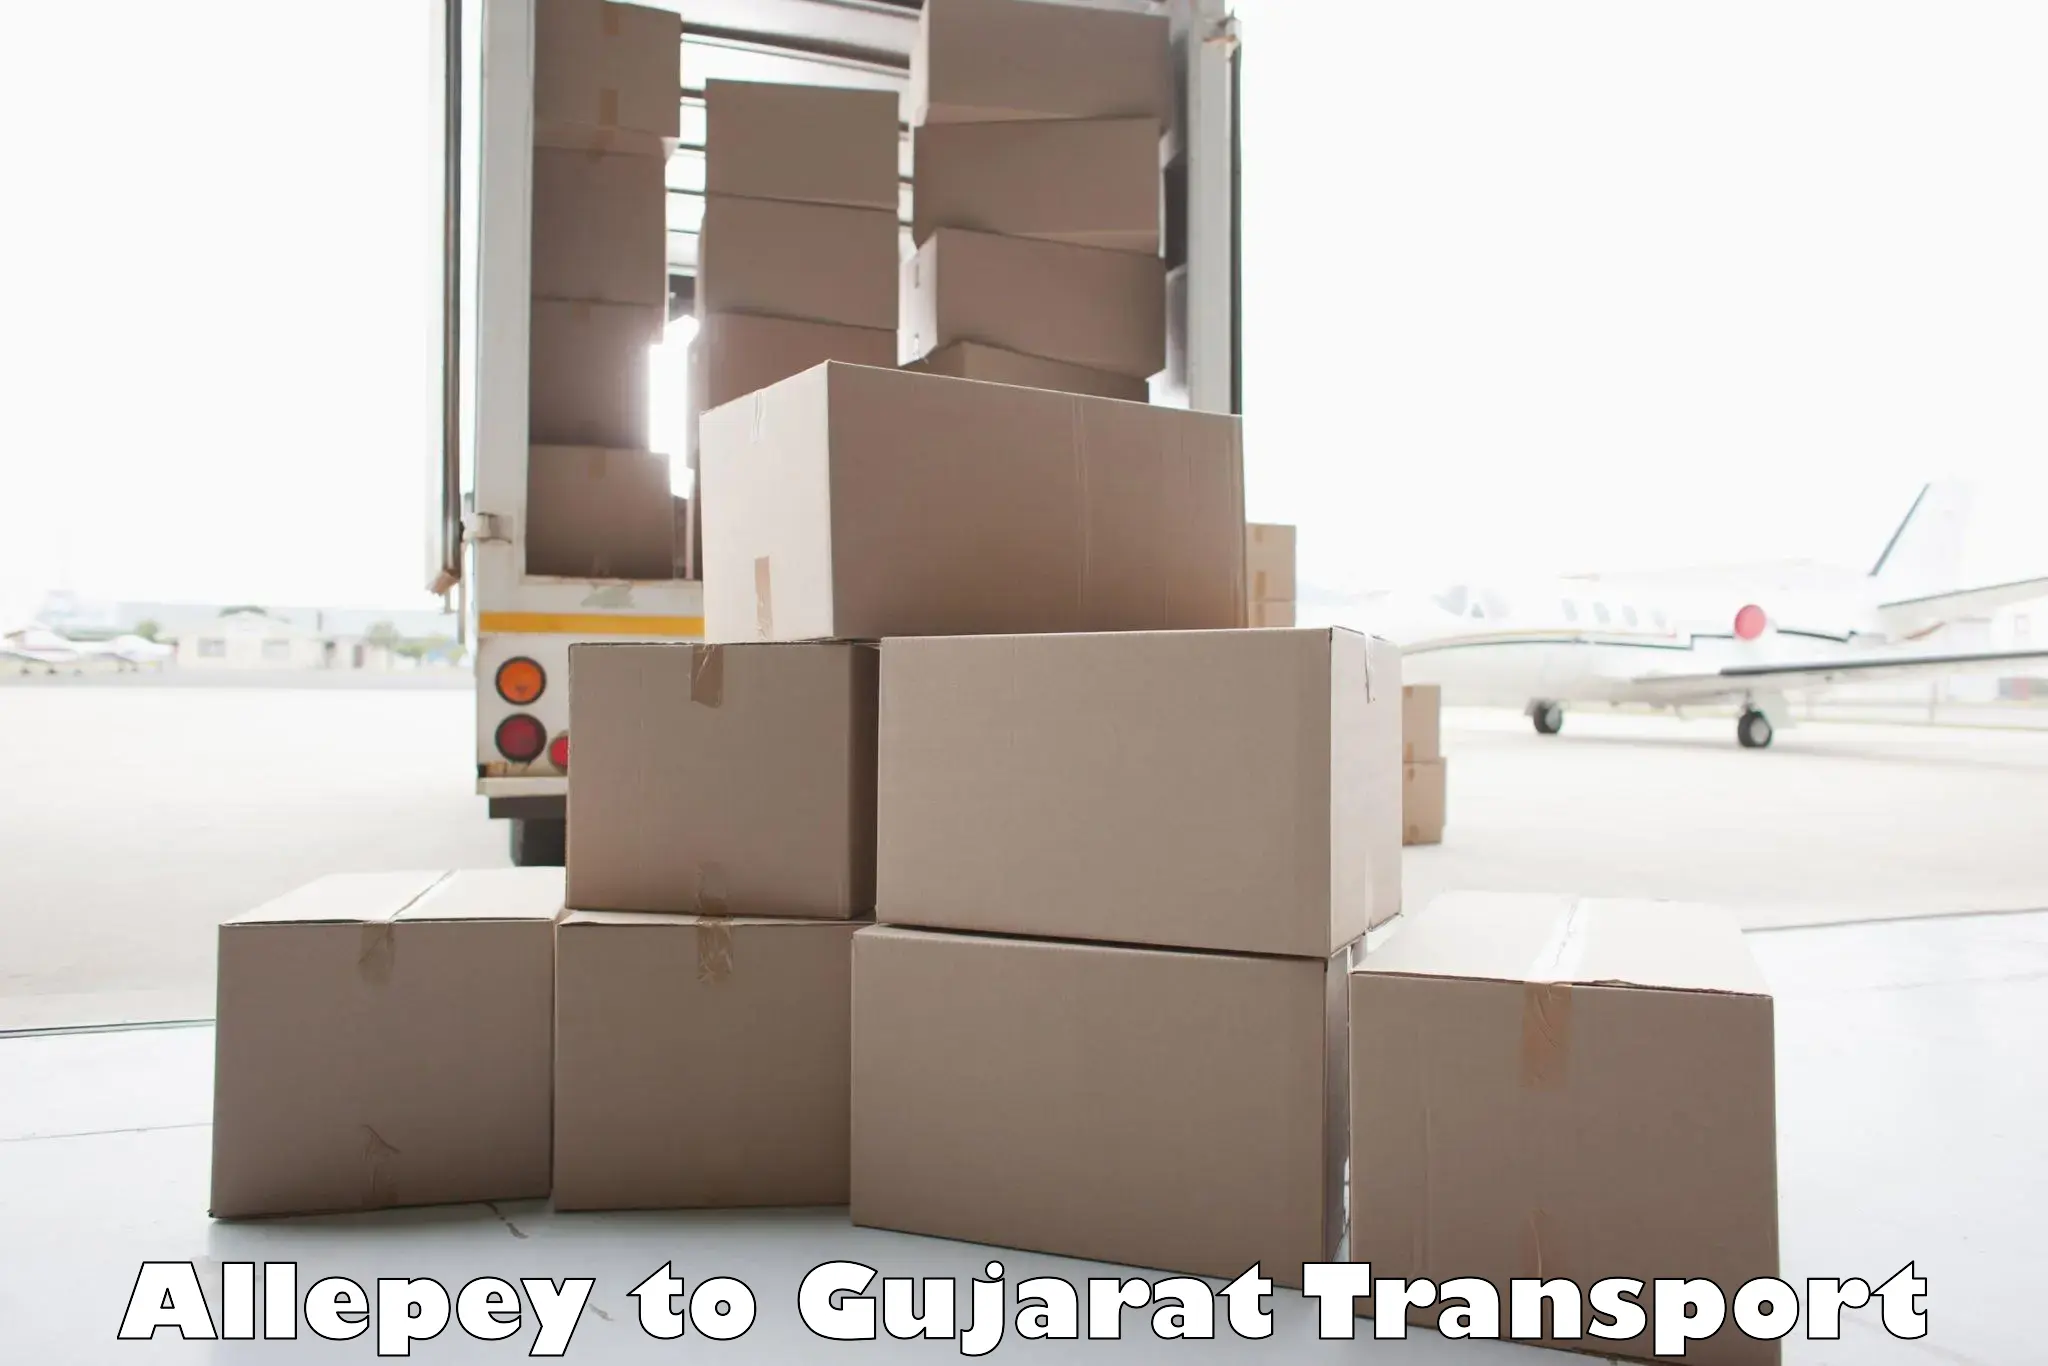 Furniture transport service Allepey to Banaskantha